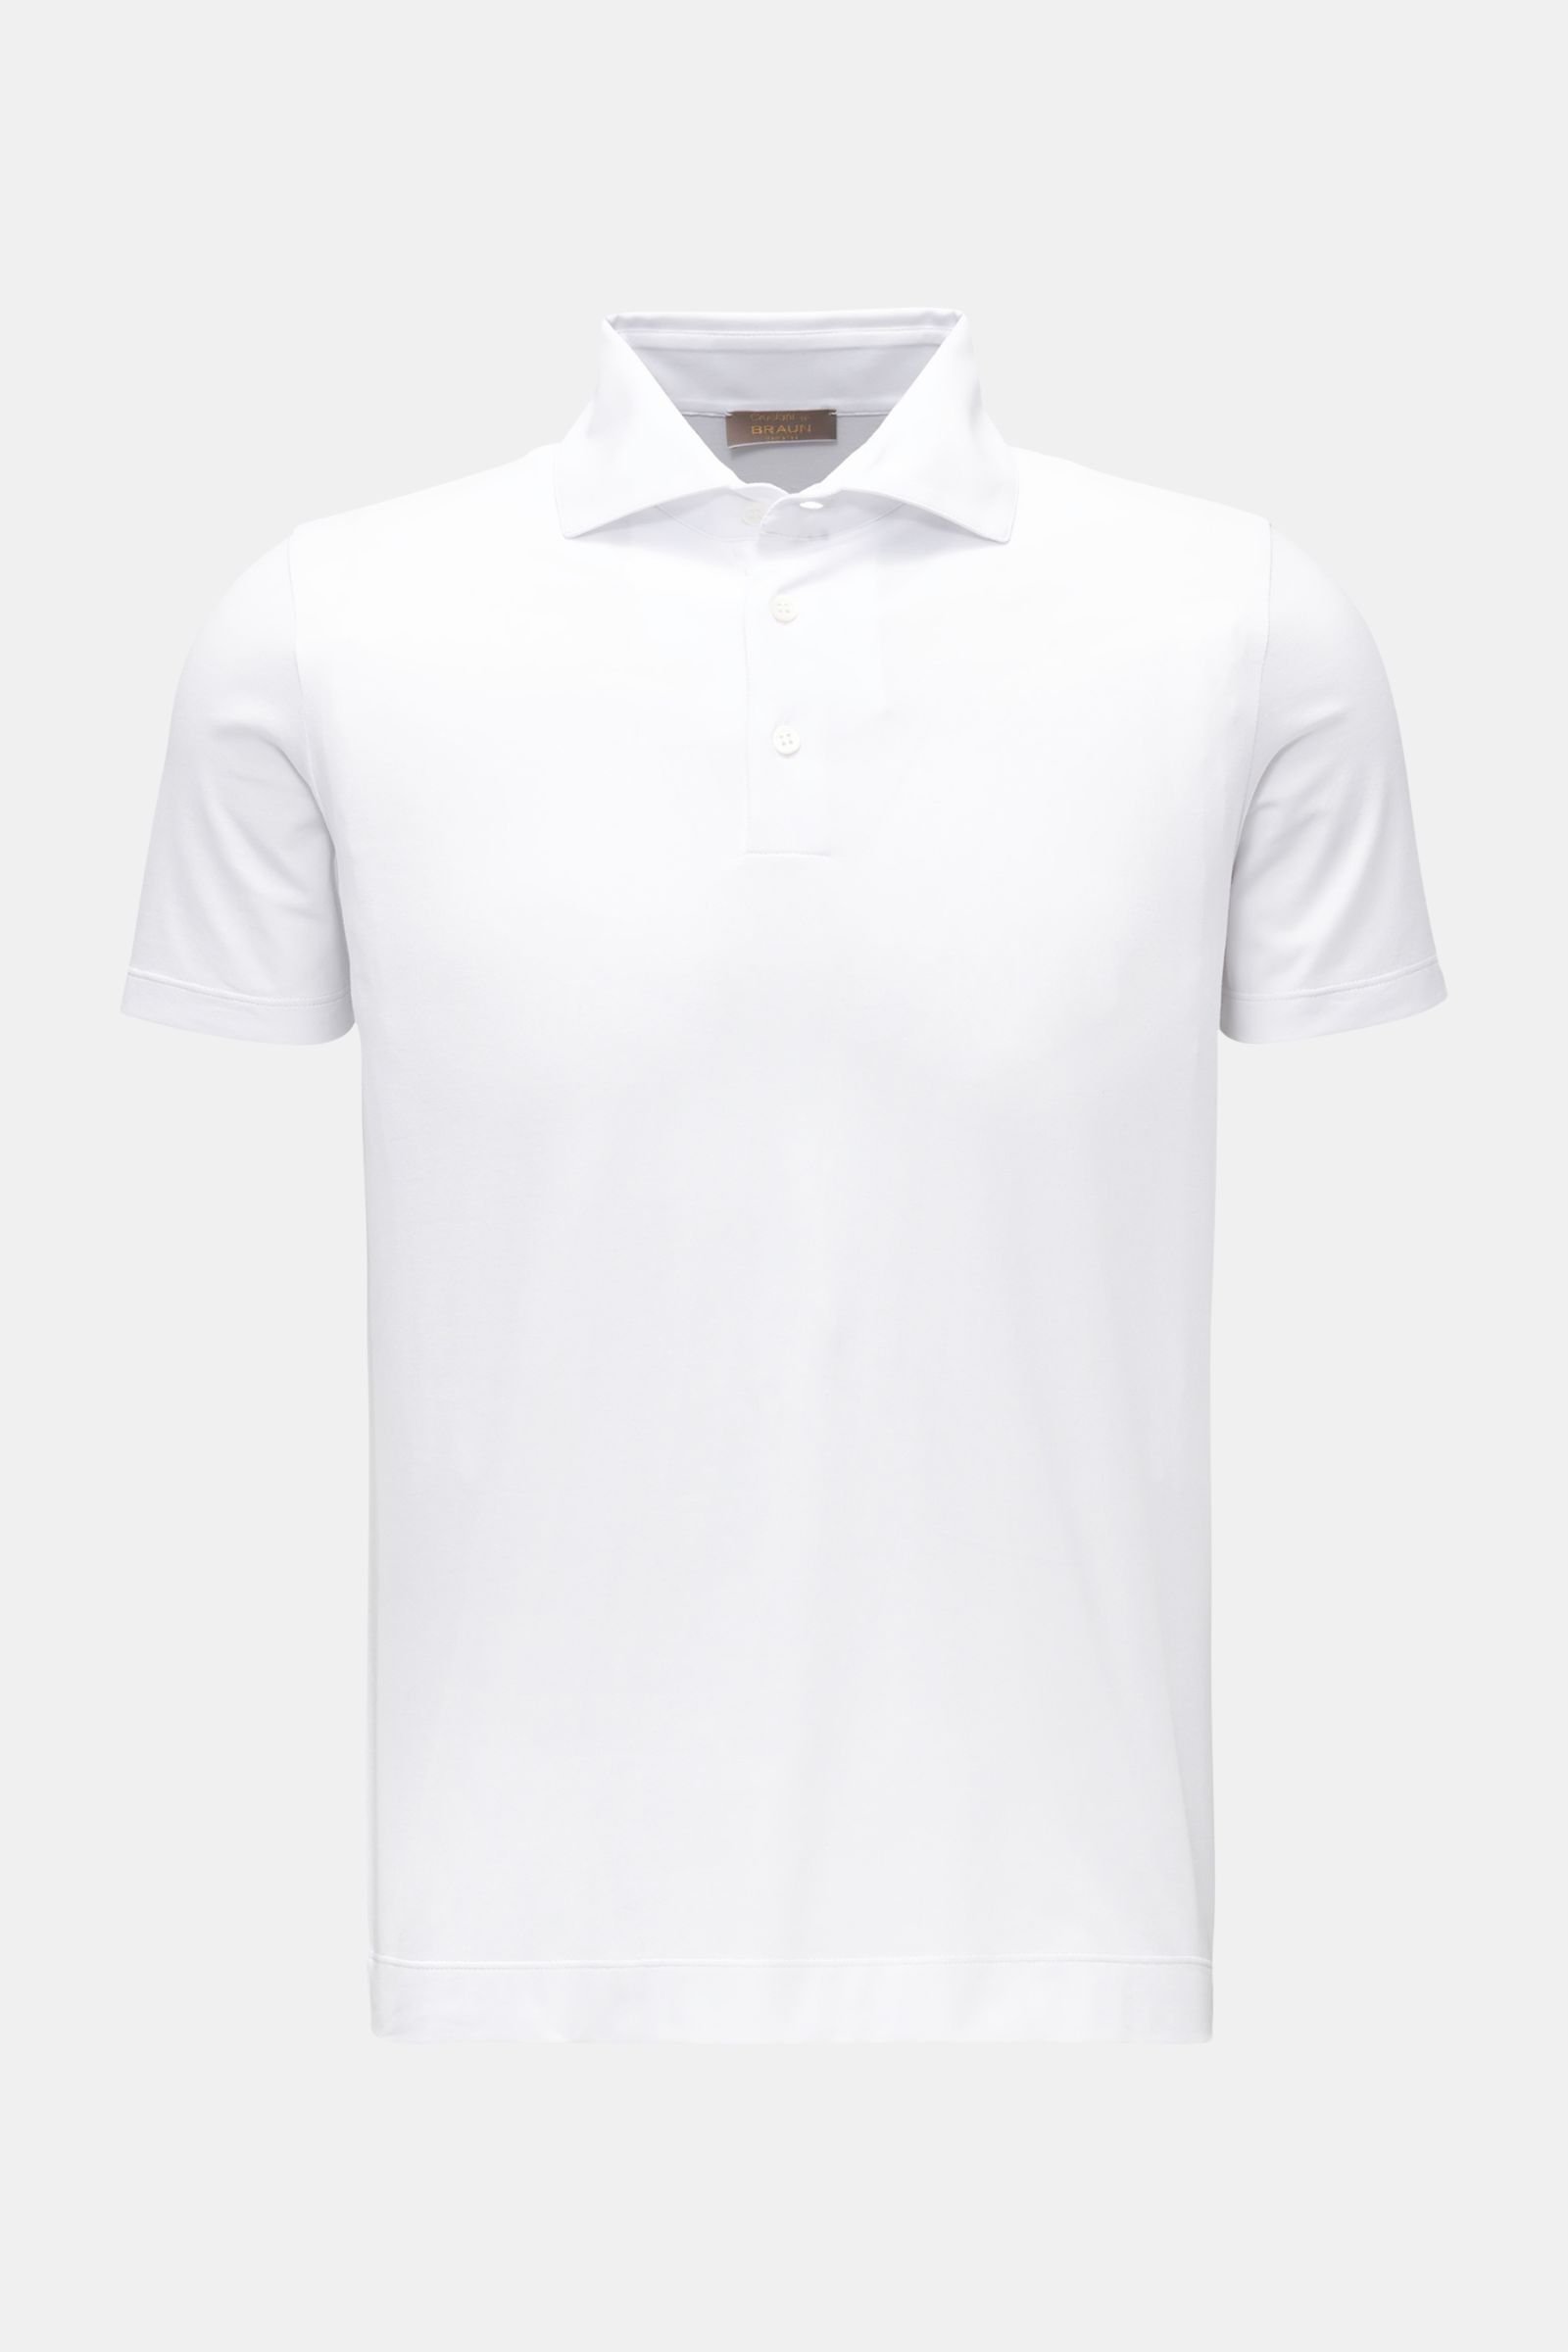 Jersey-Poloshirt weiß